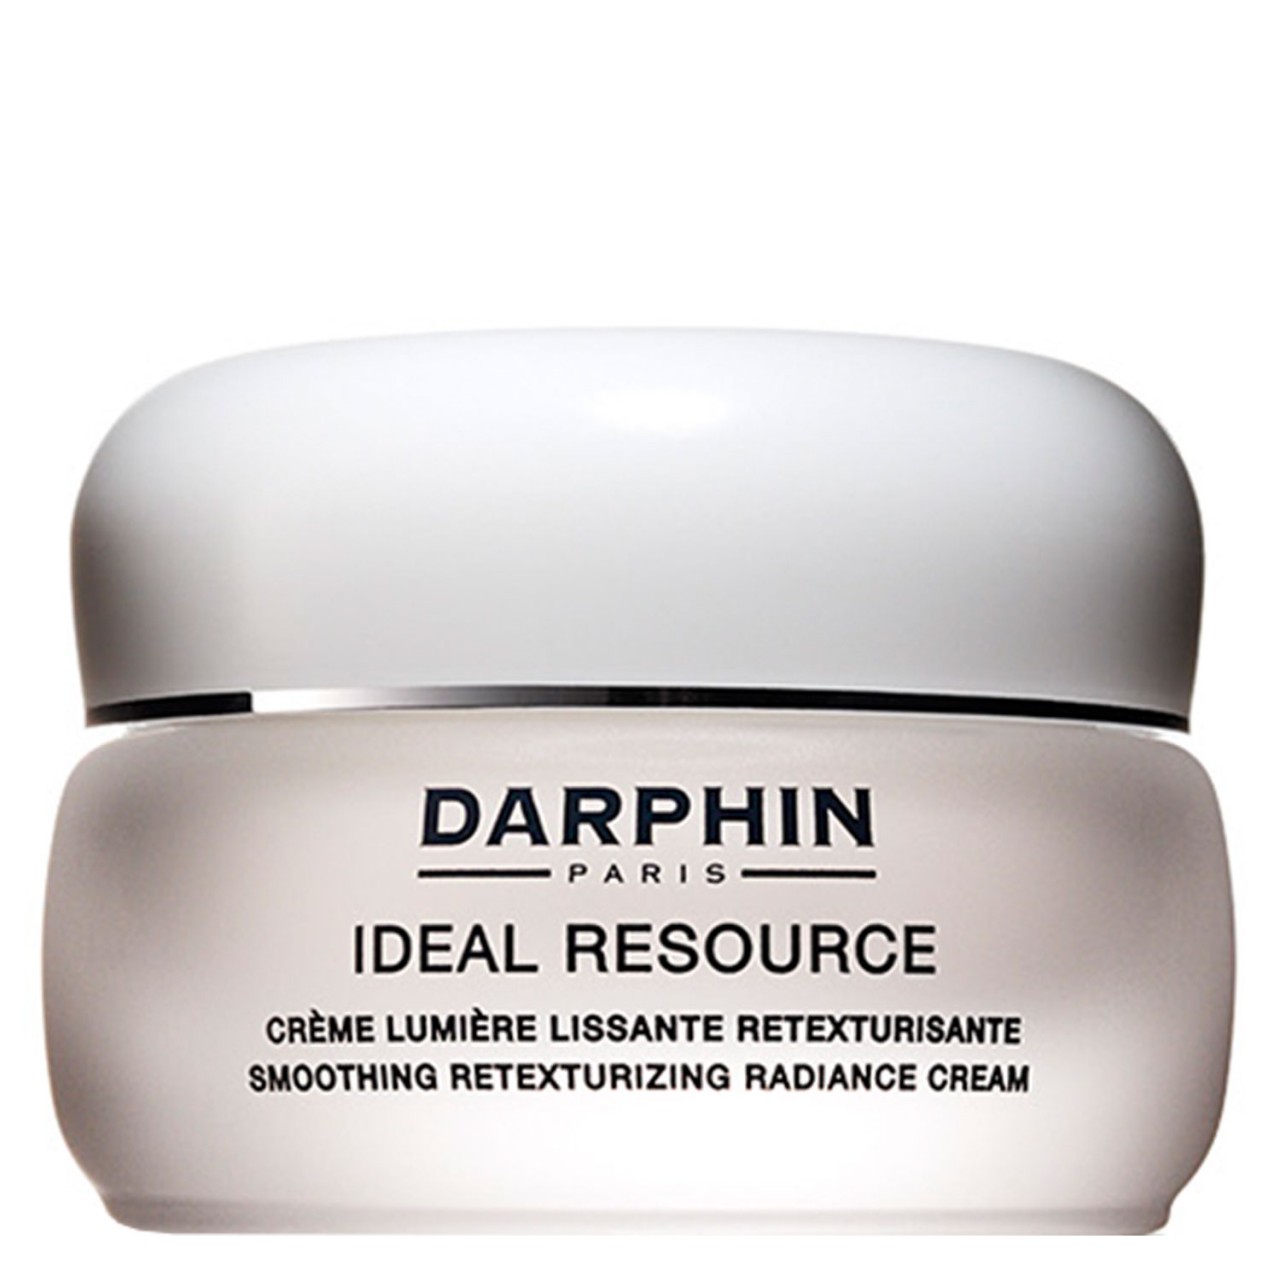 IDEAL RESOURCE - Smoothing Retexturizing Radiance Cream von Darphin